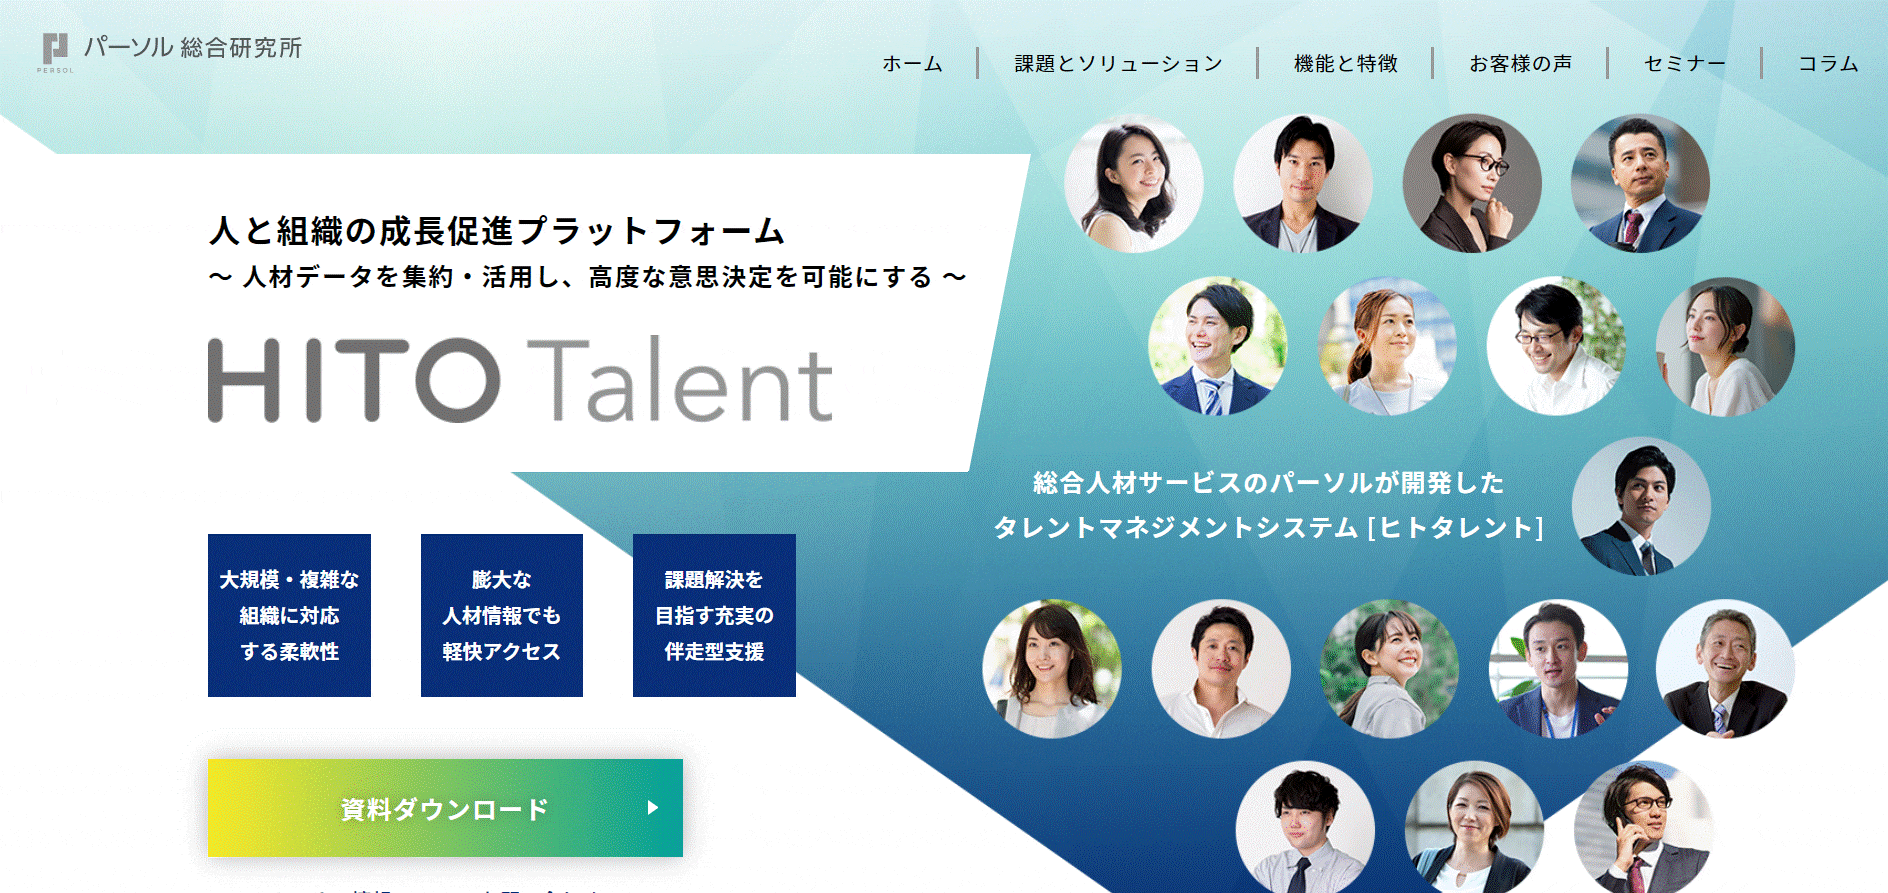 HITO-Talent（株式会社パーソル総合研究所）